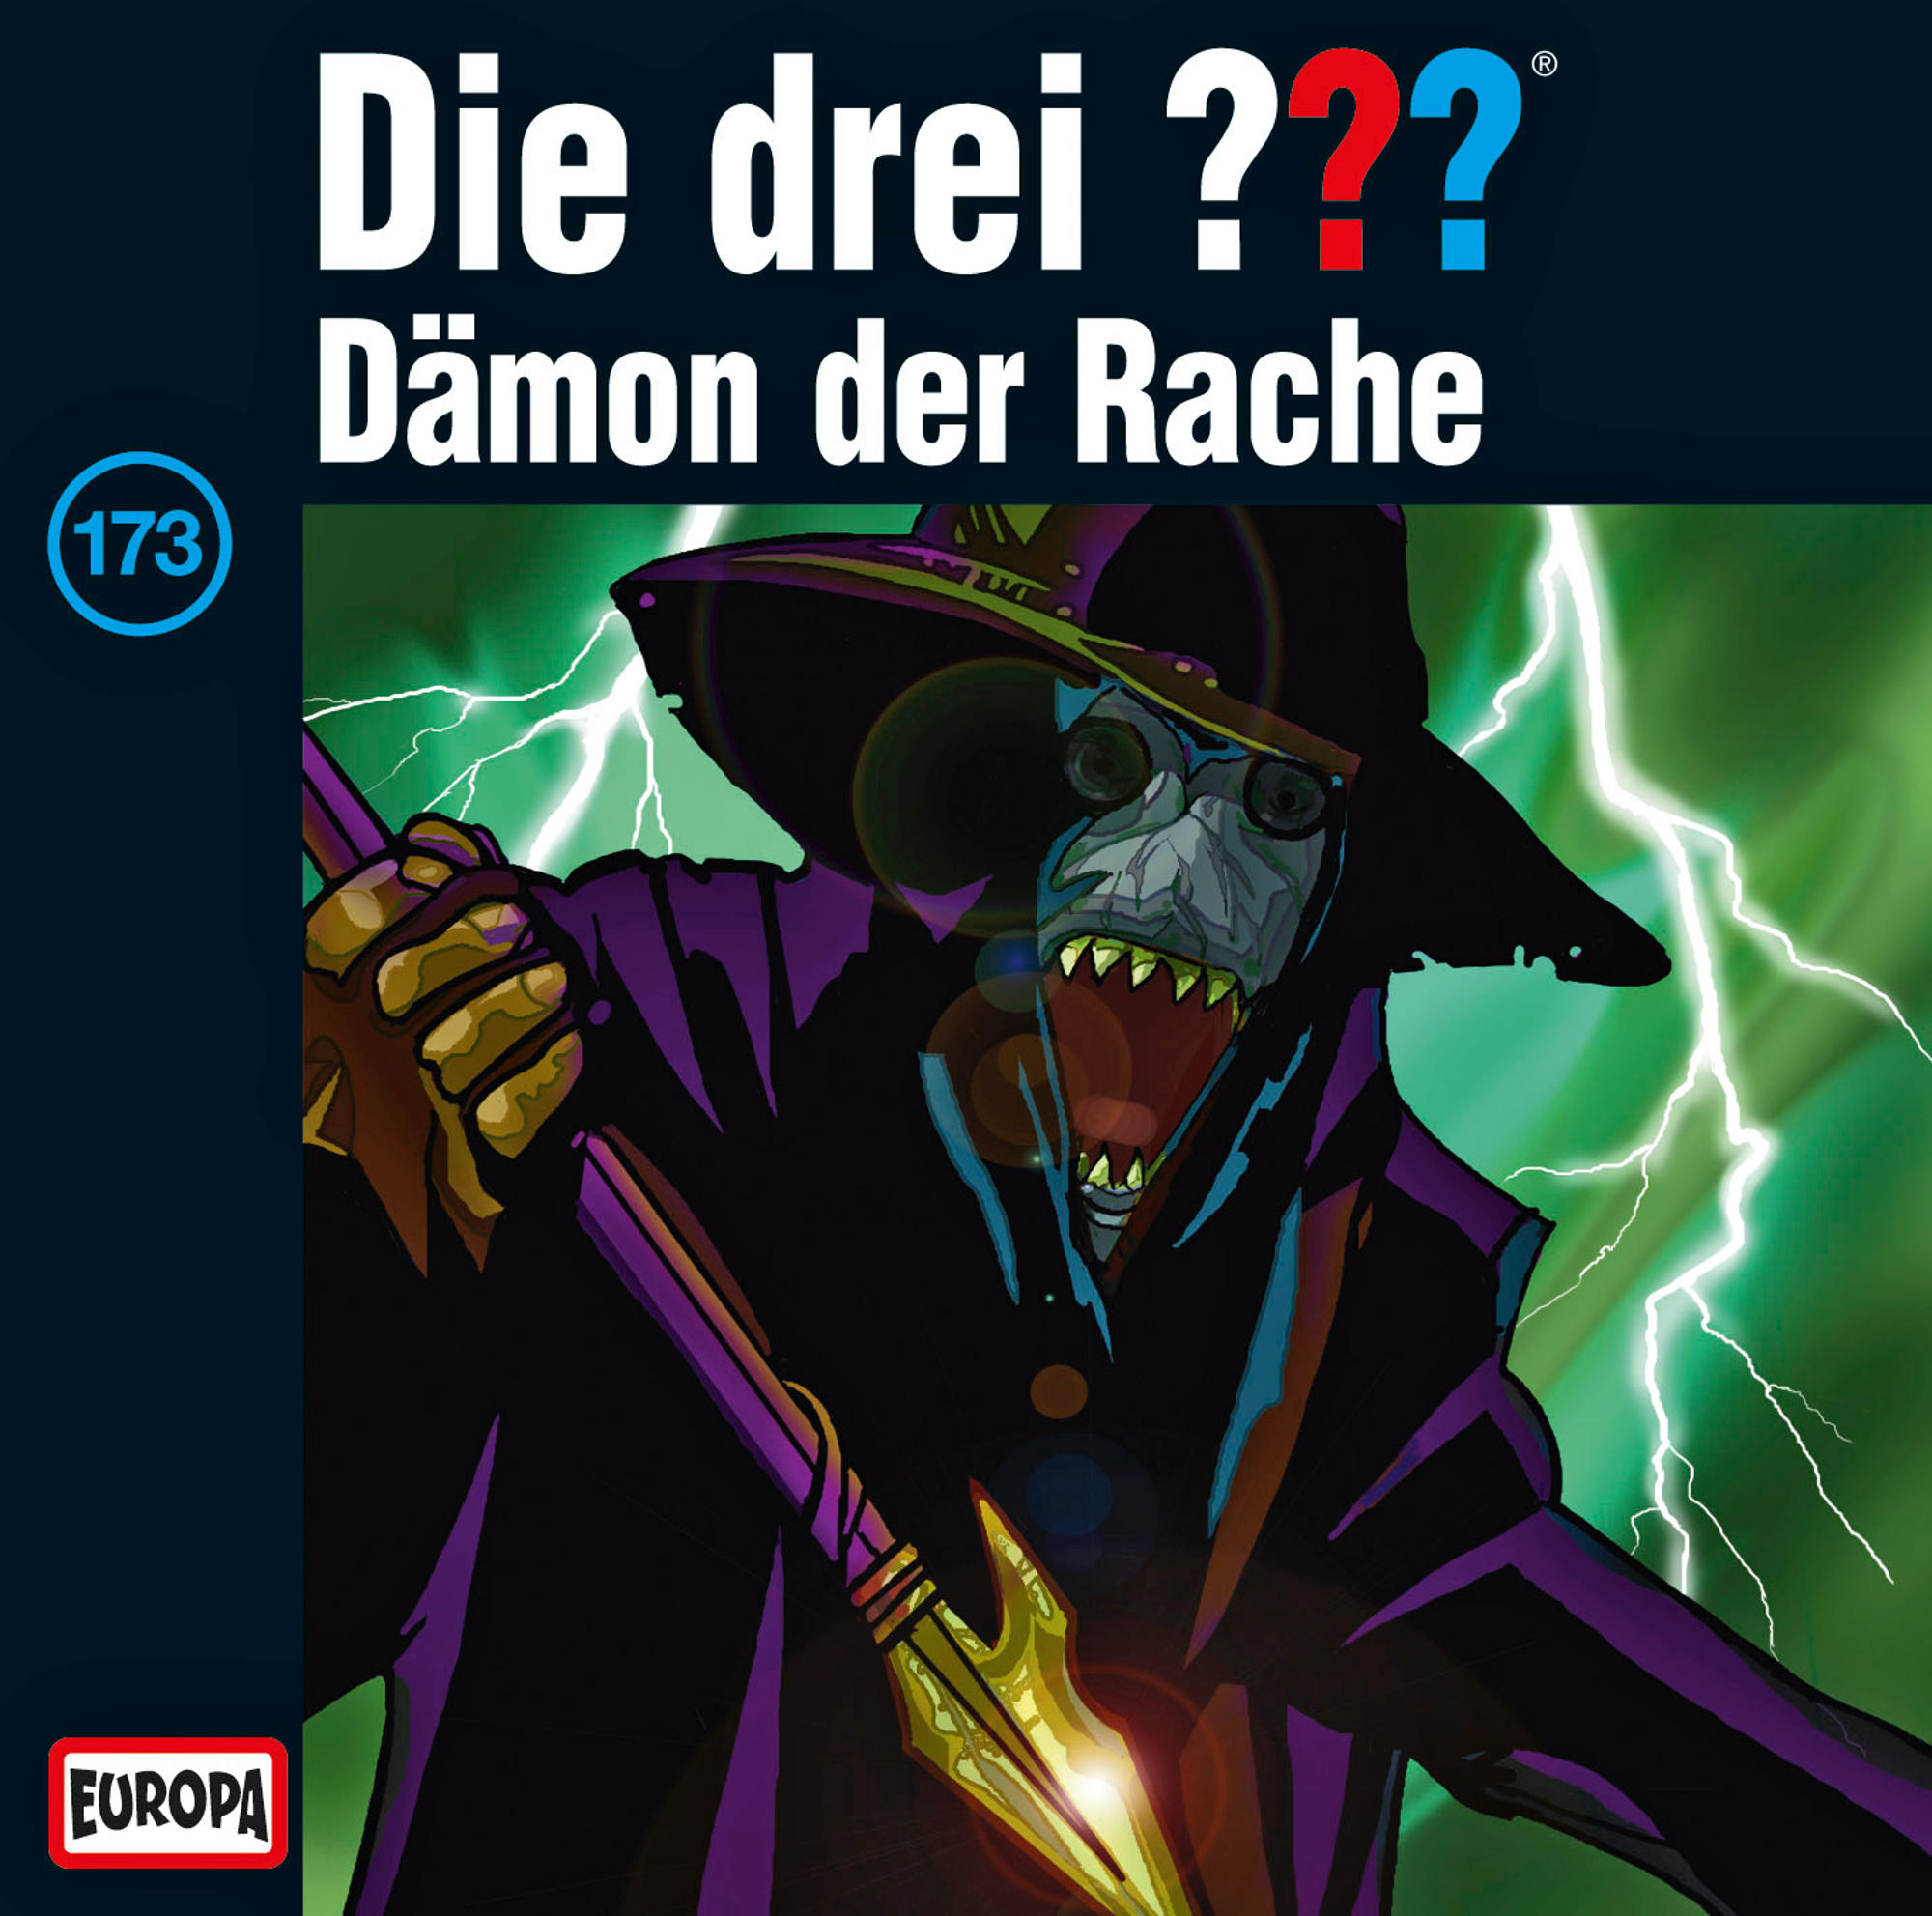 drei - 173: Rache Die der ??? (CD) Dämon